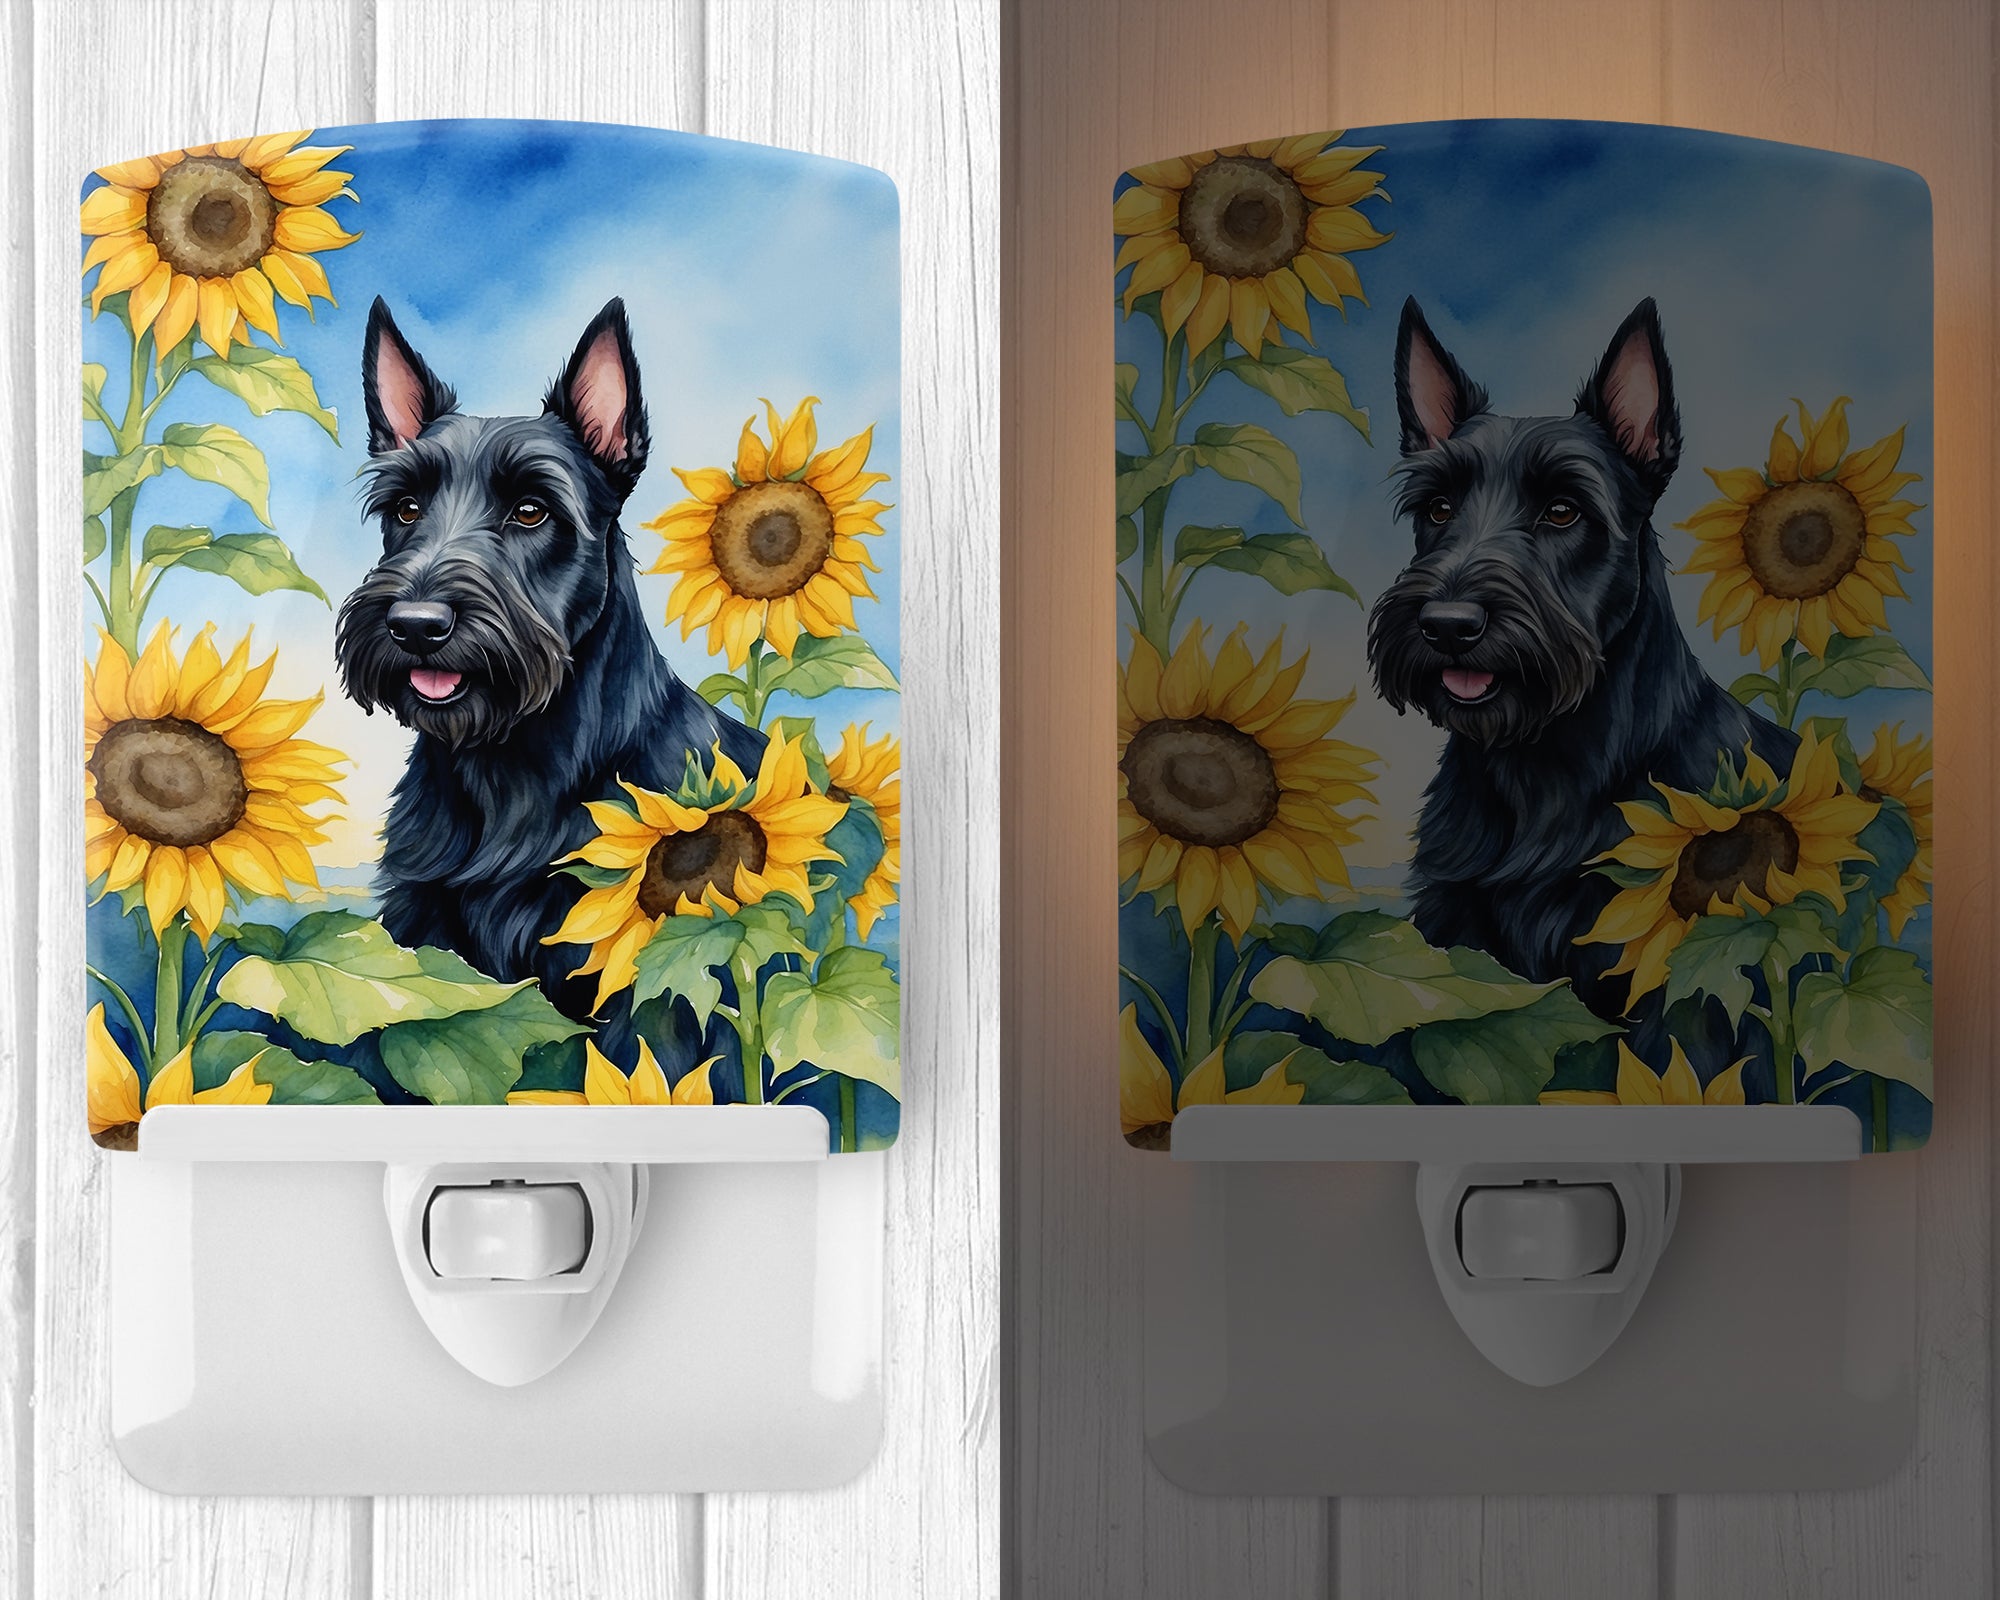 Buy this Scottish Terrier in Sunflowers Ceramic Night Light